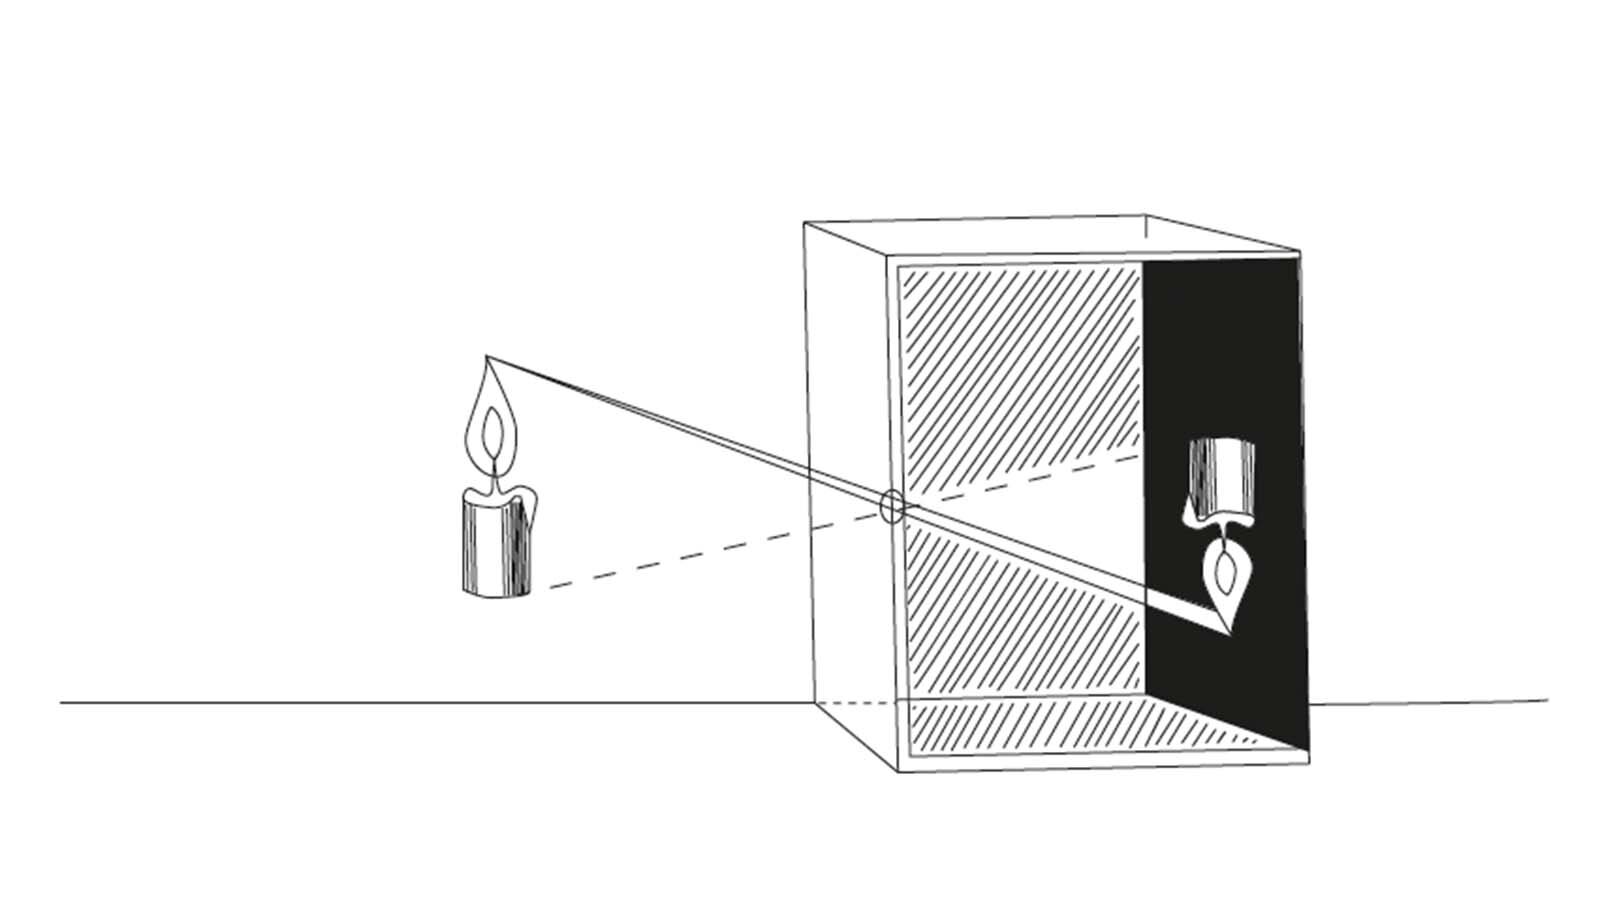 Grafika przedstawia budowę camera obscura, widać na niej świeczkę umieszczoną przed pudełkiem, na ściance pudełka znajdującej się od strony świeczki widać szczelinę, prze które przechodzi światło do wnętrza, we wnętrzu pudełka na przeciwległej ścianie widać obraz świeczki stojącej do góry nogami.